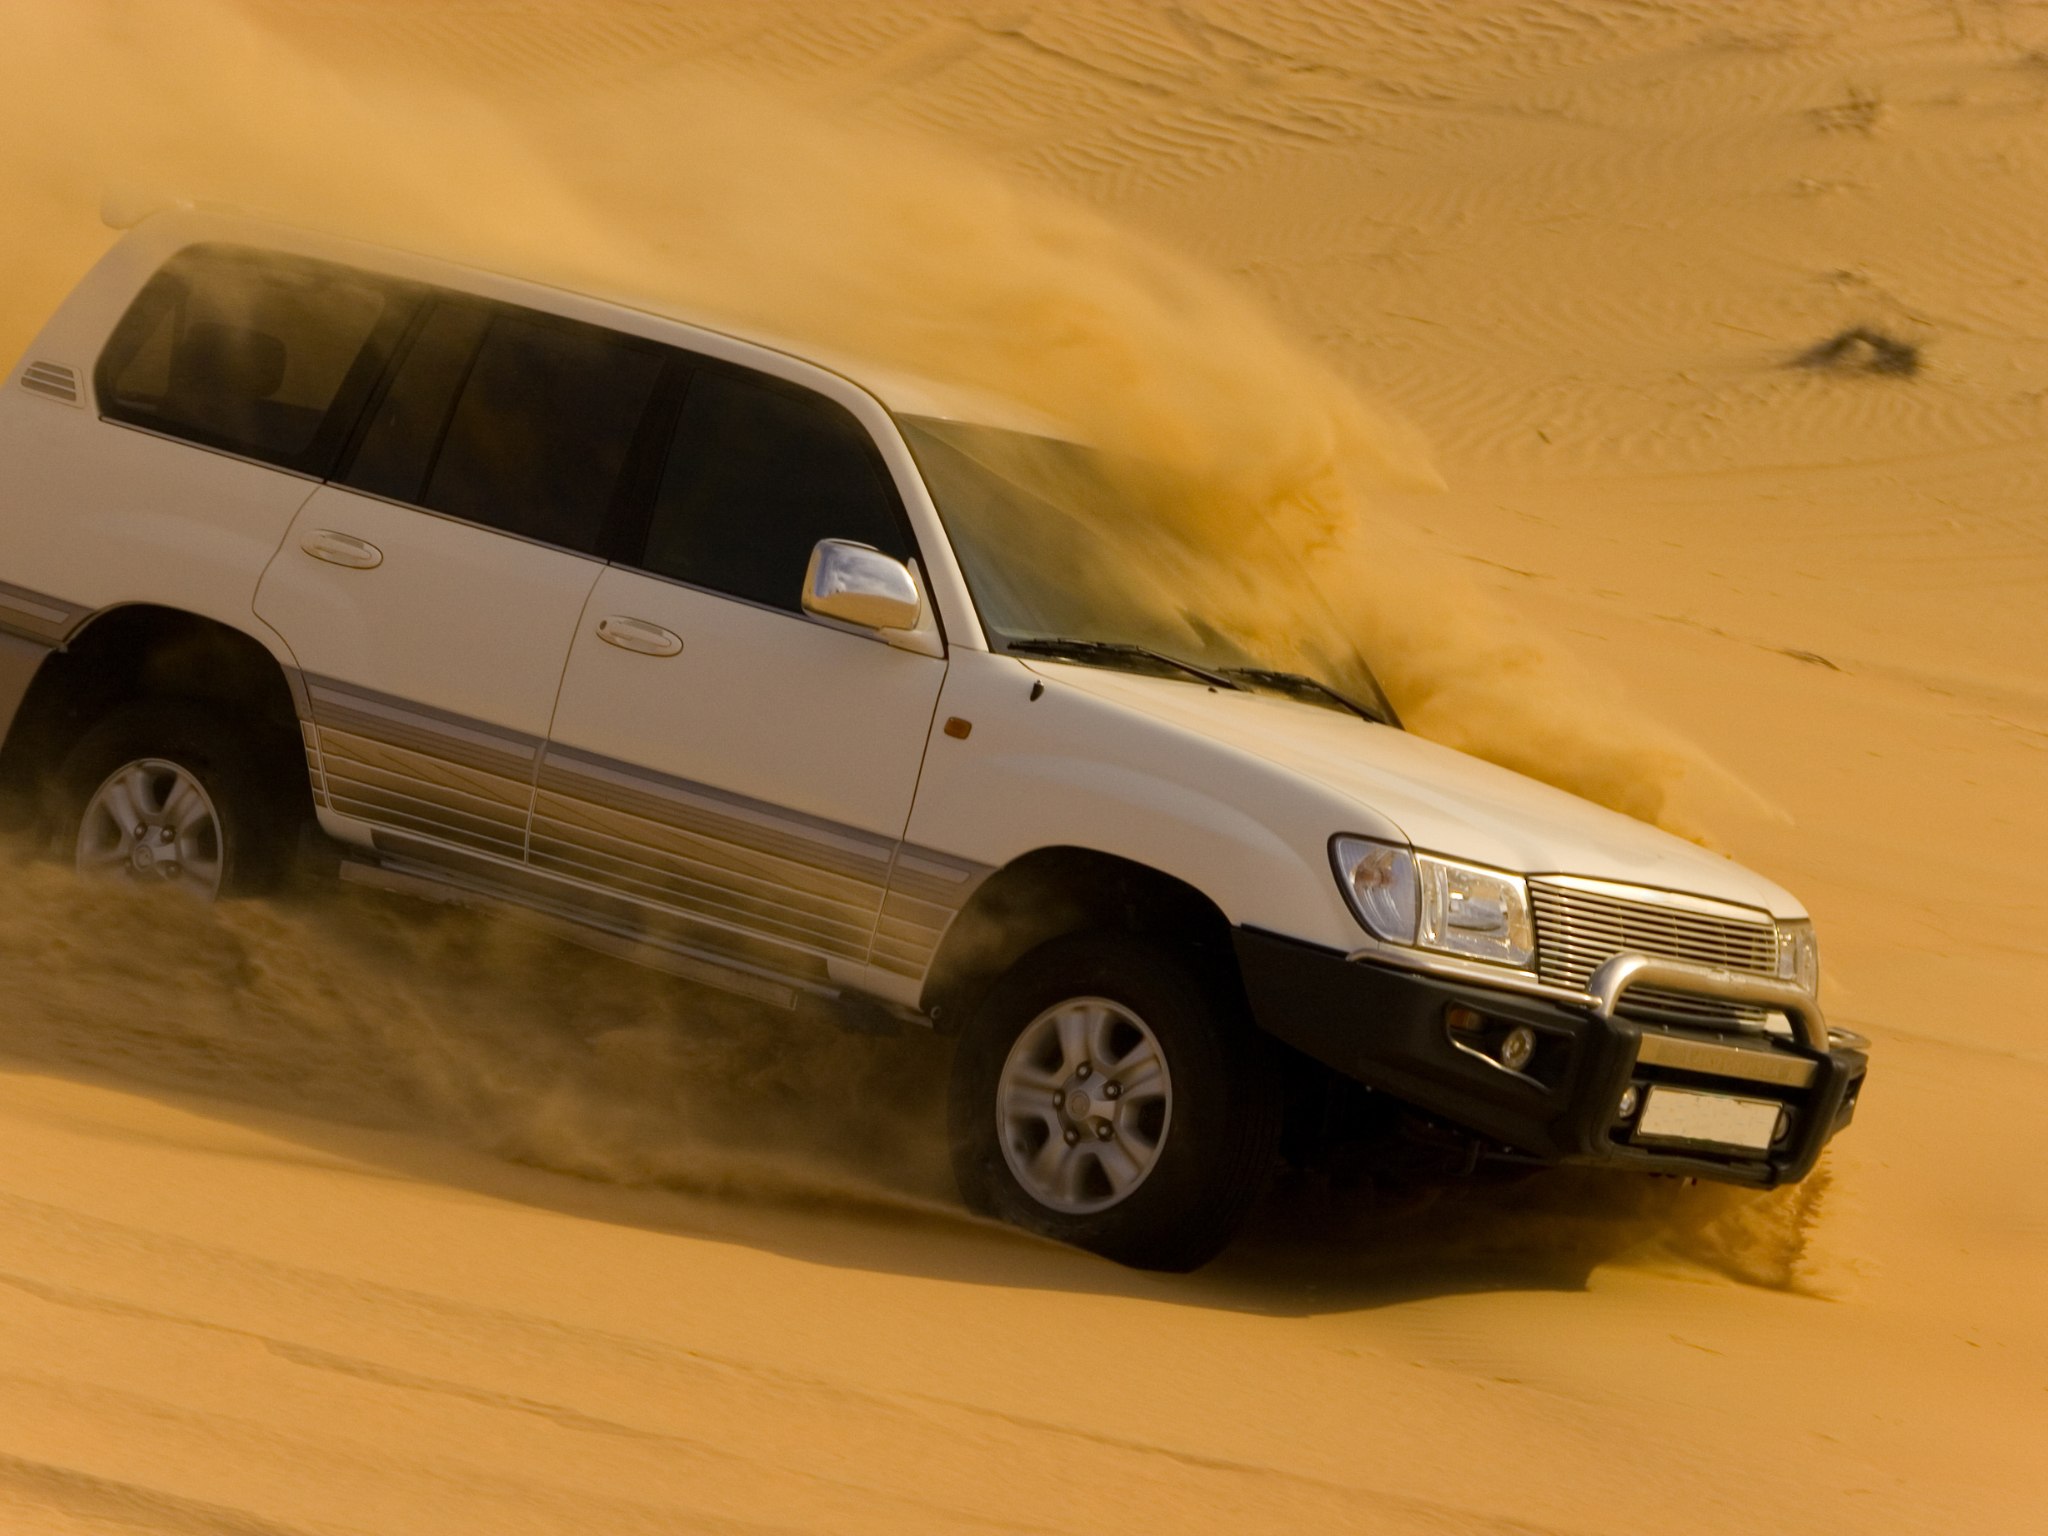 VIP Desert Safari in Dubai